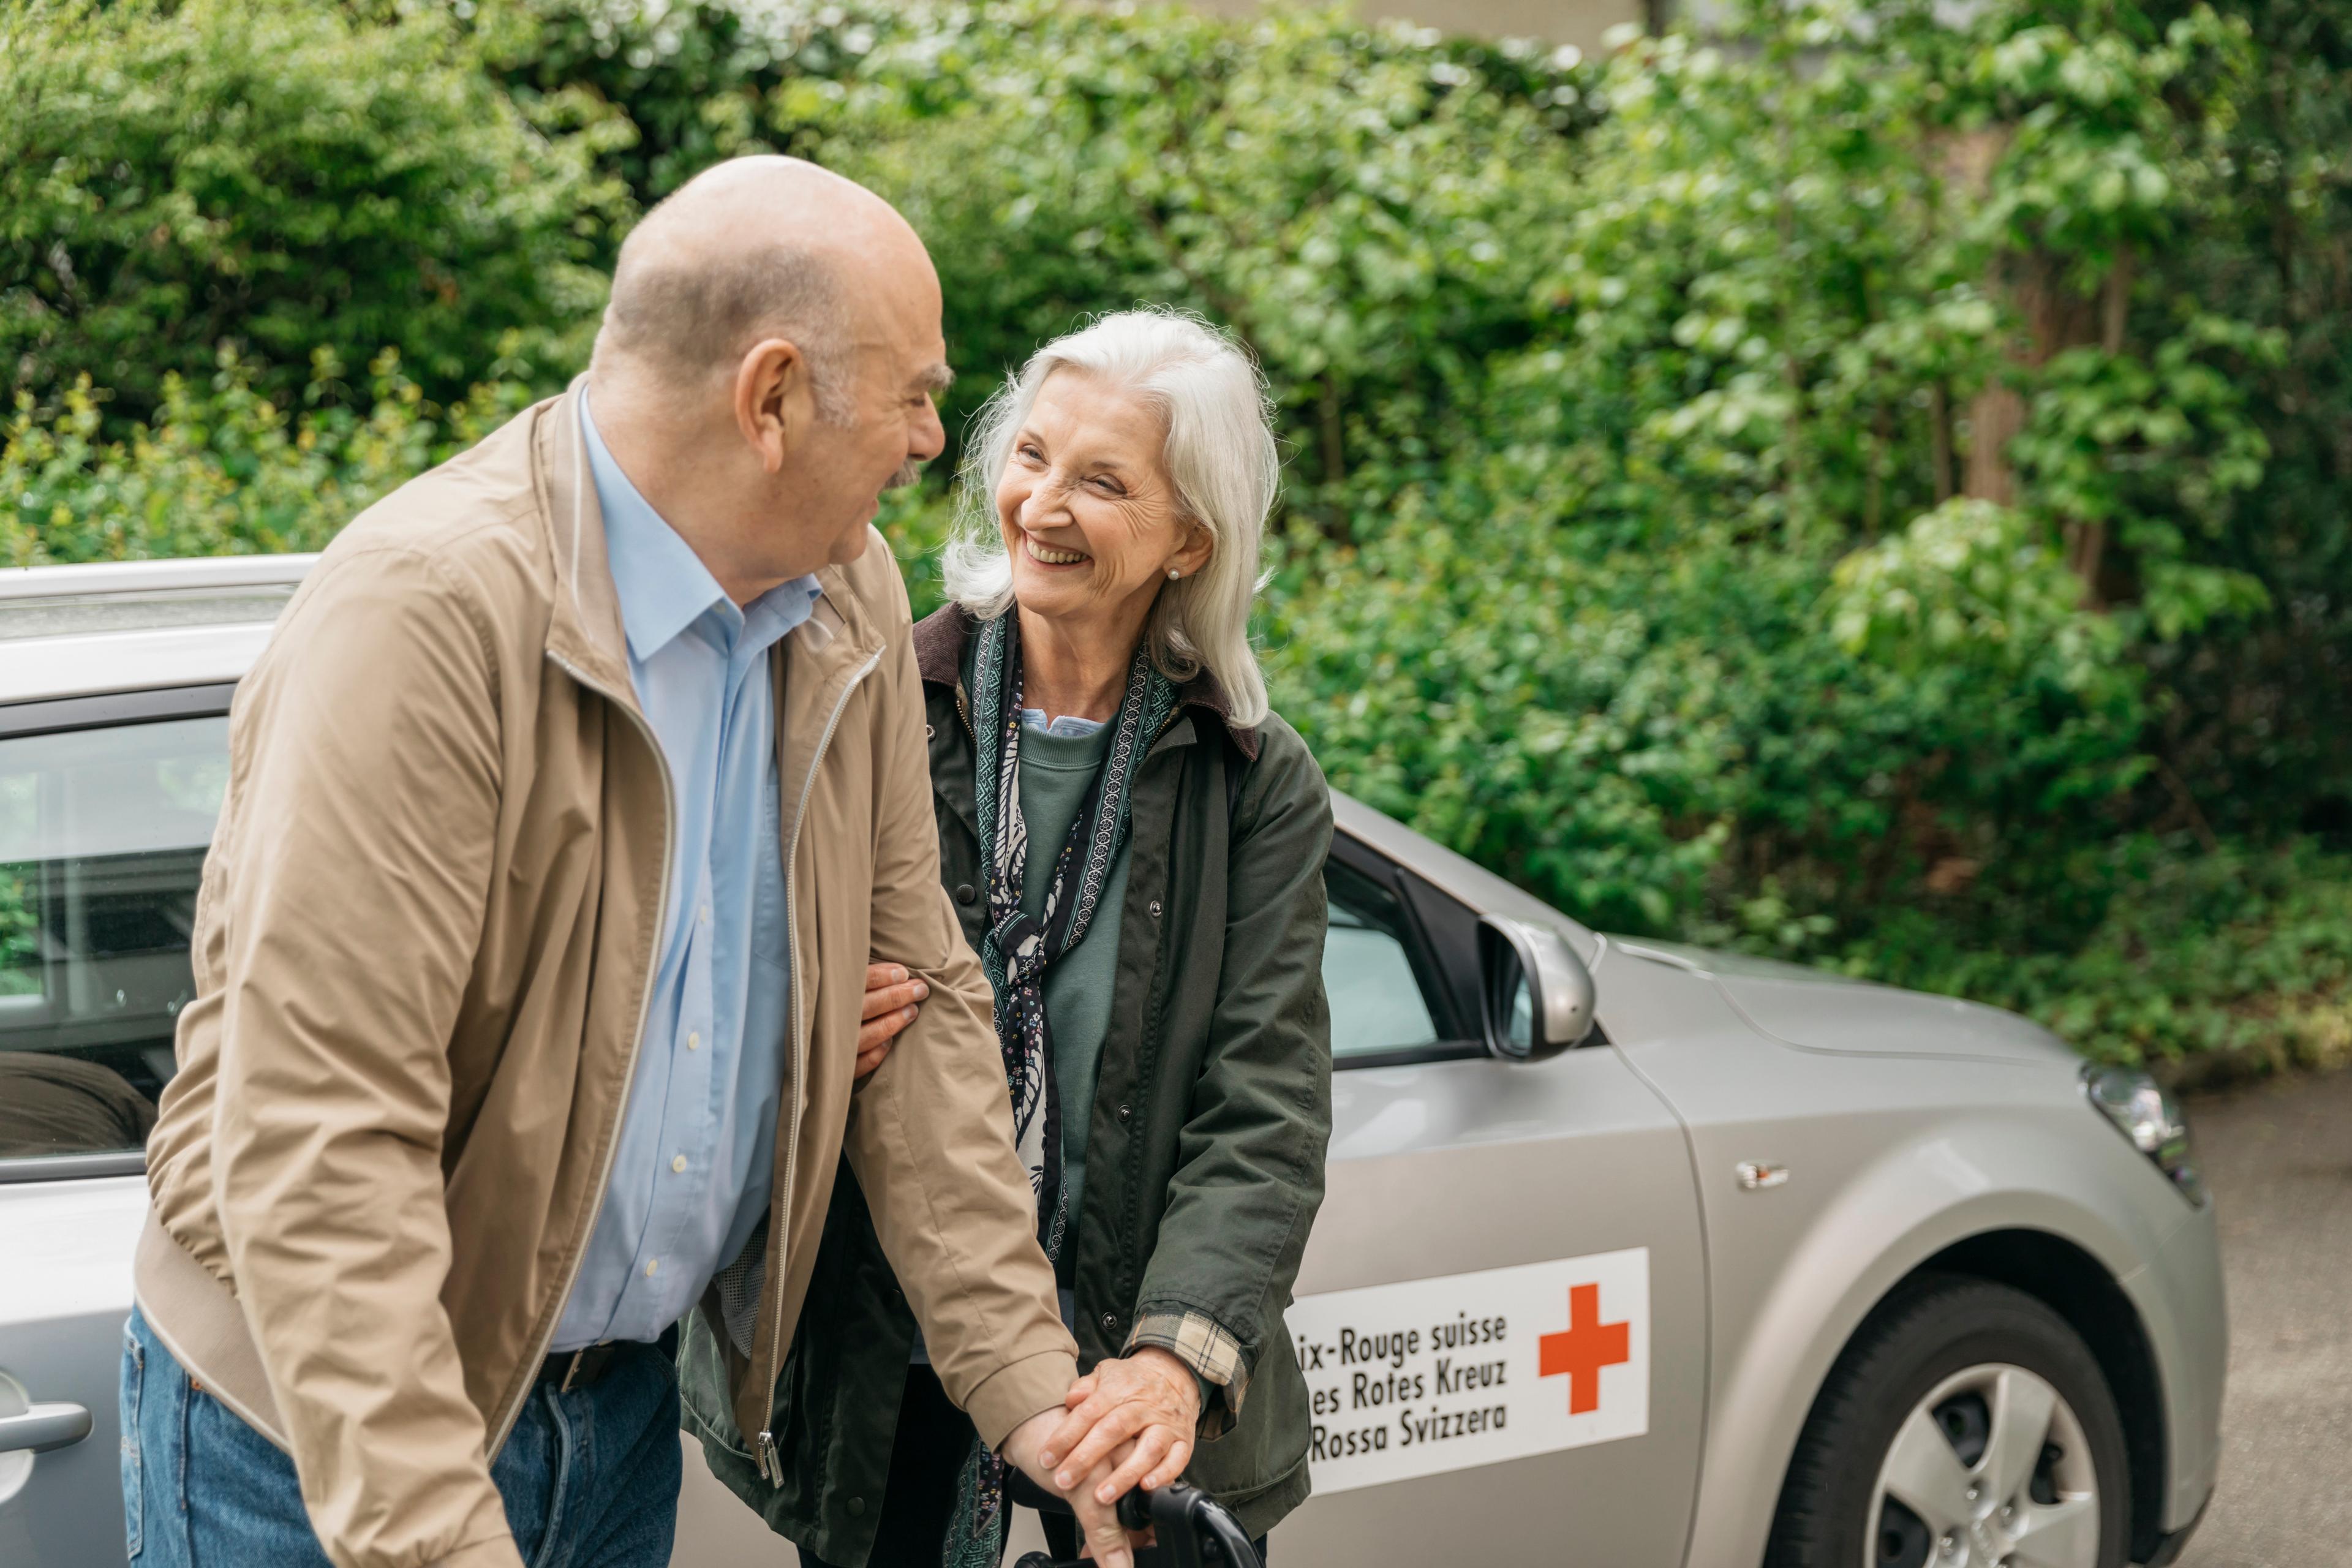 Une conductrice bénévole tient le bras d'un homme à mobilité réduite devant un véhicule de la Croix-Rouge suisse. Ils échangent un grand sourire.